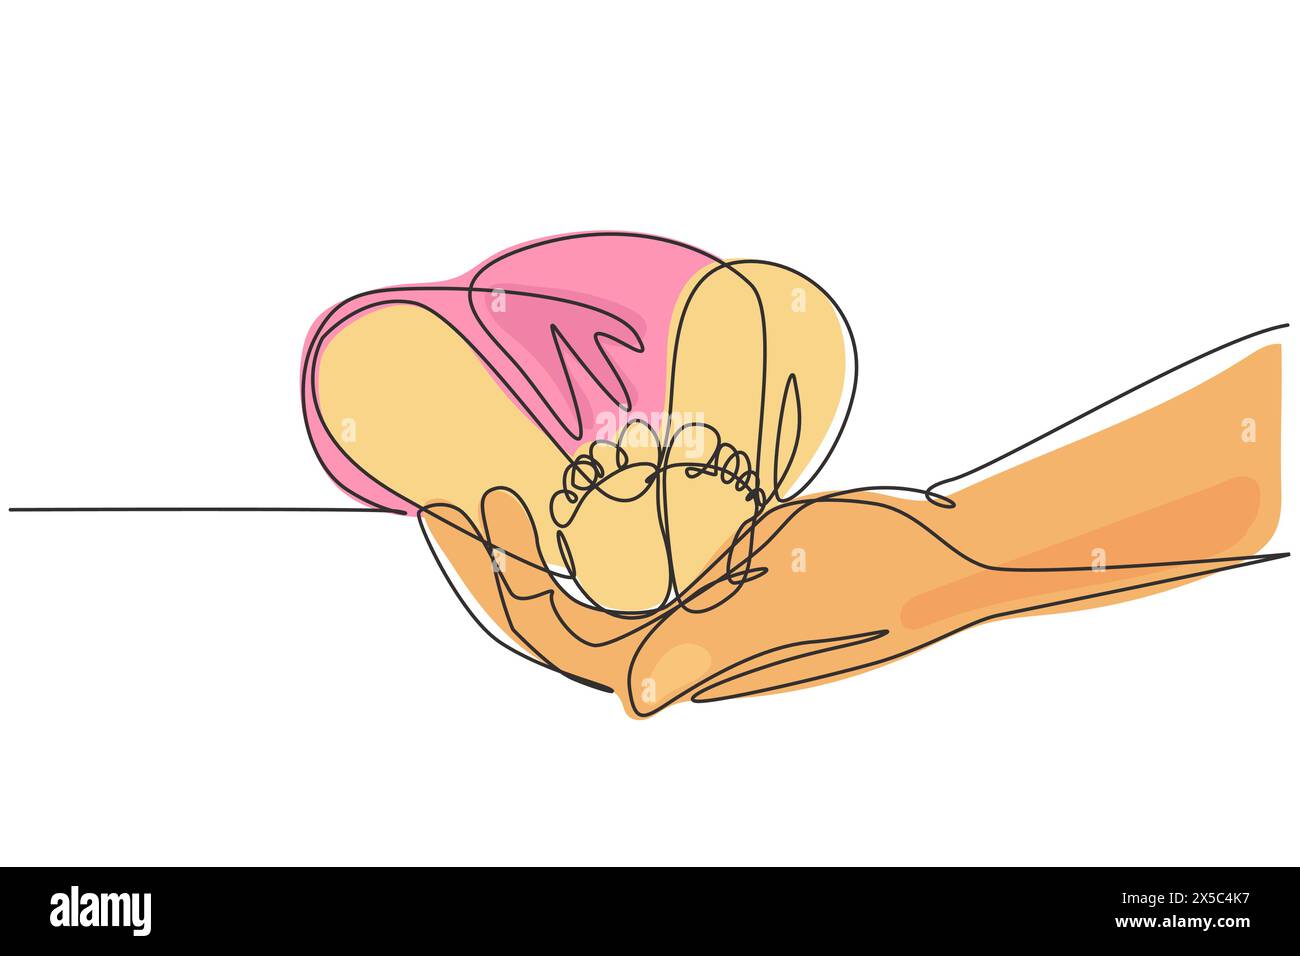 Linea singola continua che disegna i piedi del bambino in mani materne. I piedi di Tiny Newborn Baby sulle mani femminili. Mamma e suo figlio. Concetto di famiglia felice. Bello Illustrazione Vettoriale